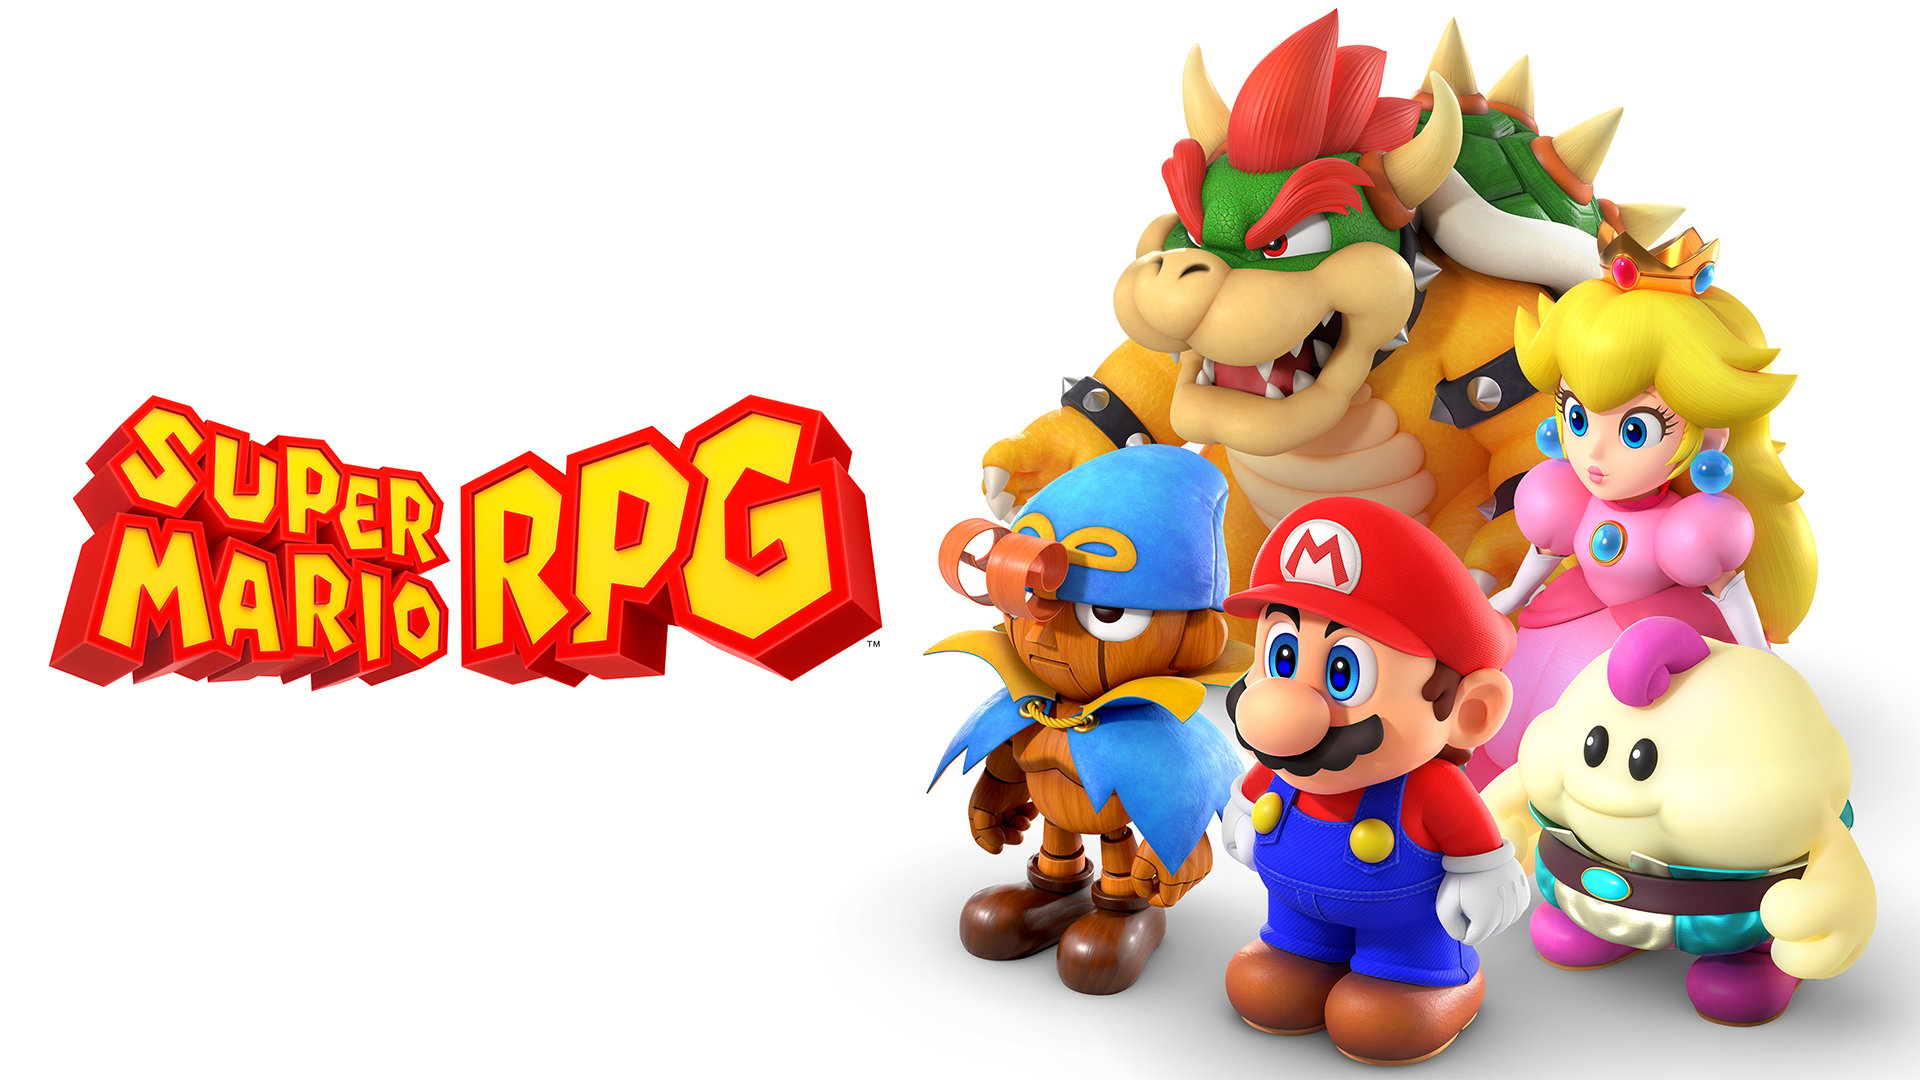 Super Mario RPG ประสบความสำเร็จในการเปิดตัวเกม Mario RPG ที่ยิ่งใหญ่ที่สุดในญี่ปุ่นนับตั้งแต่ภาคแรก